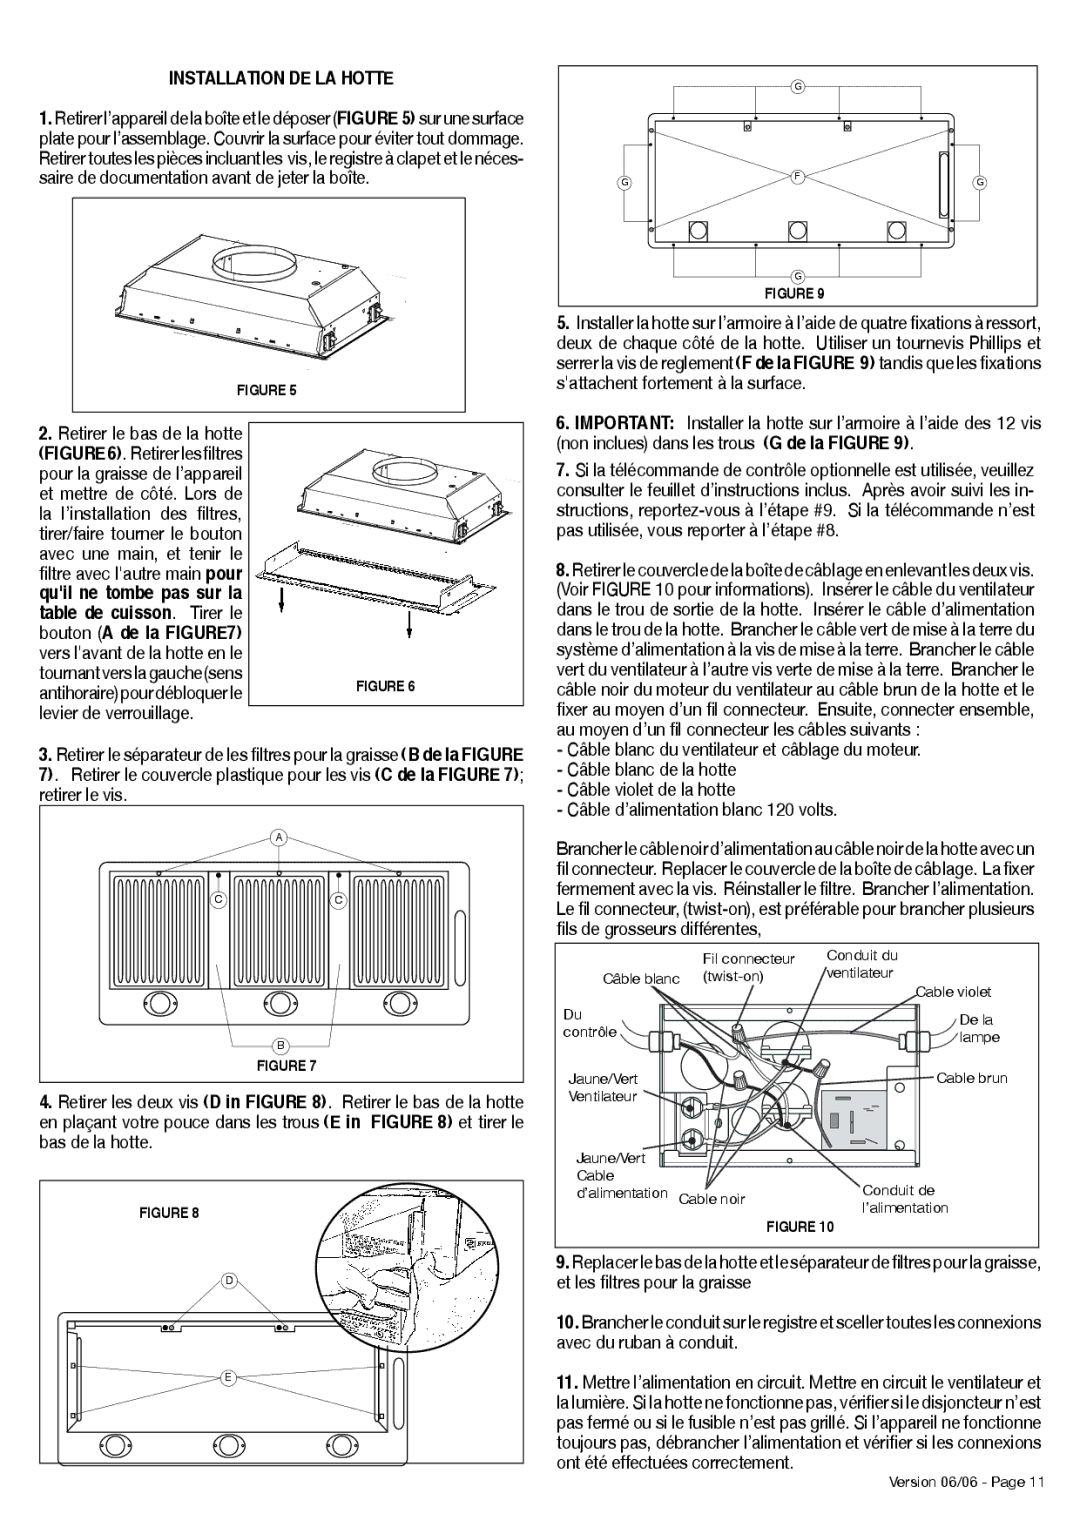 Faber INCA PRO 38 RB installation instructions Installation DE LA Hotte, Retirer le bas de la hotte 